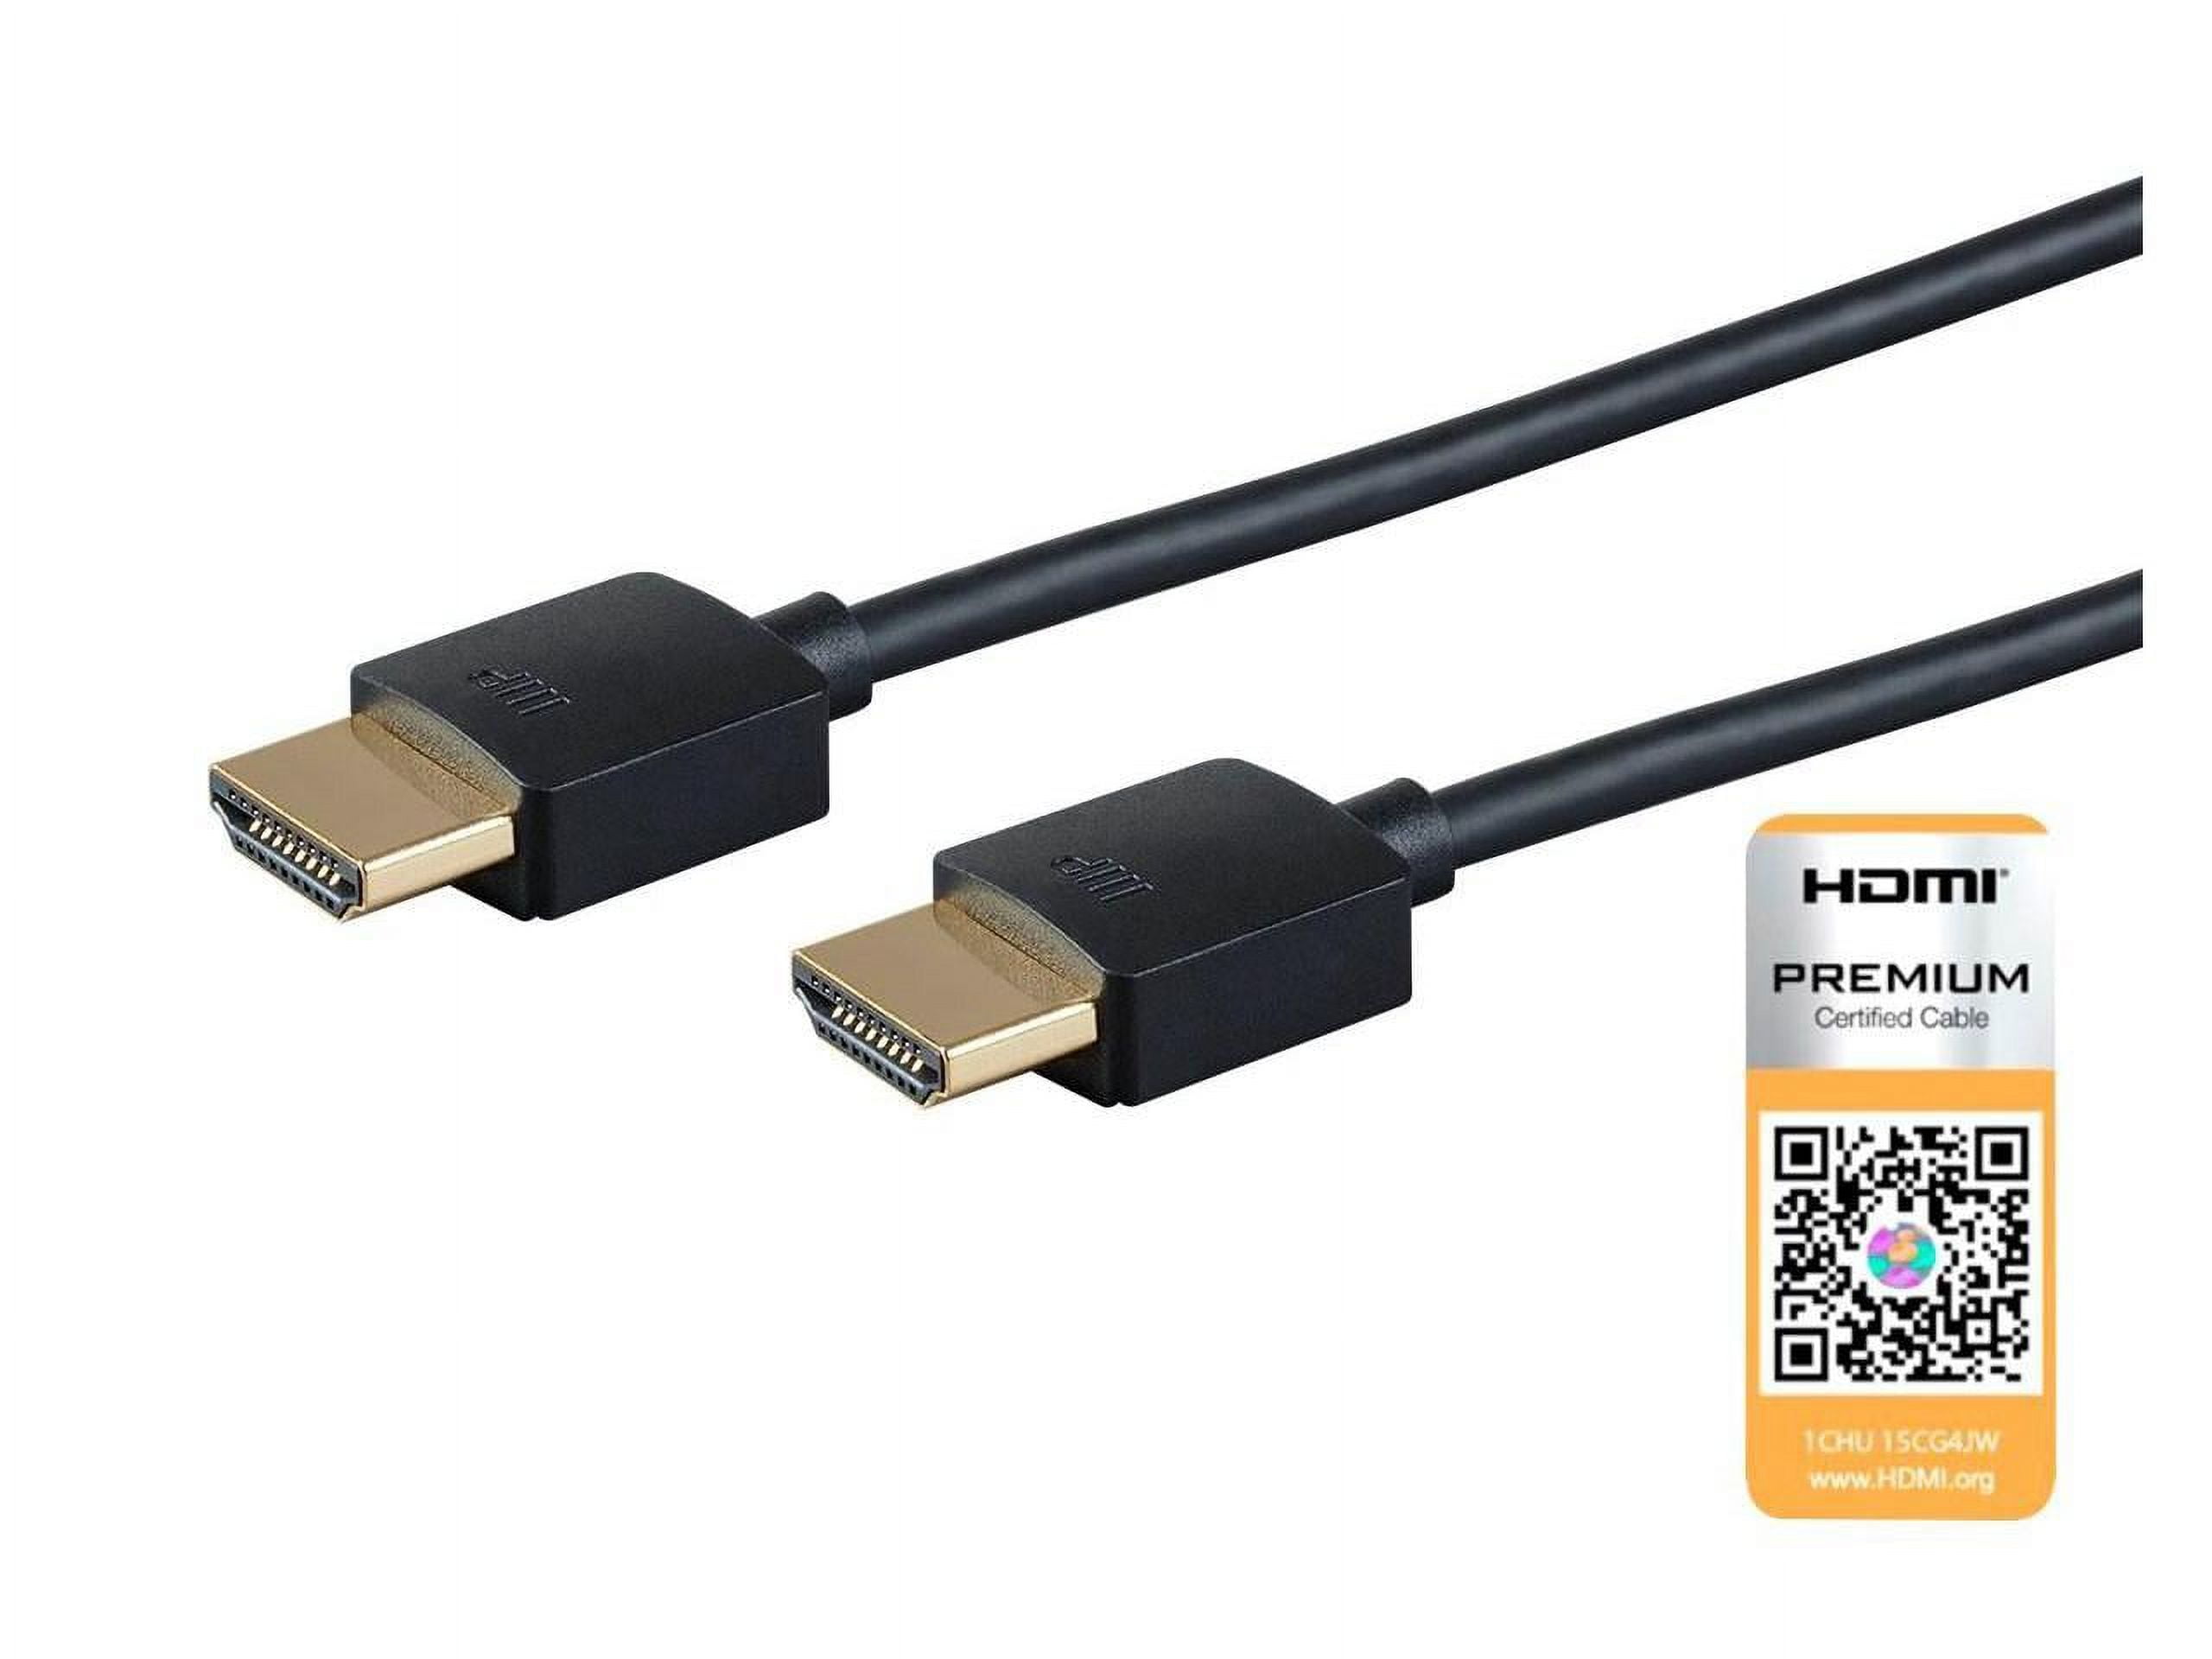 Tienda online con Cable de vídeo HDMI 1,8 metros (CC-HDMI4-6). DISOFIC